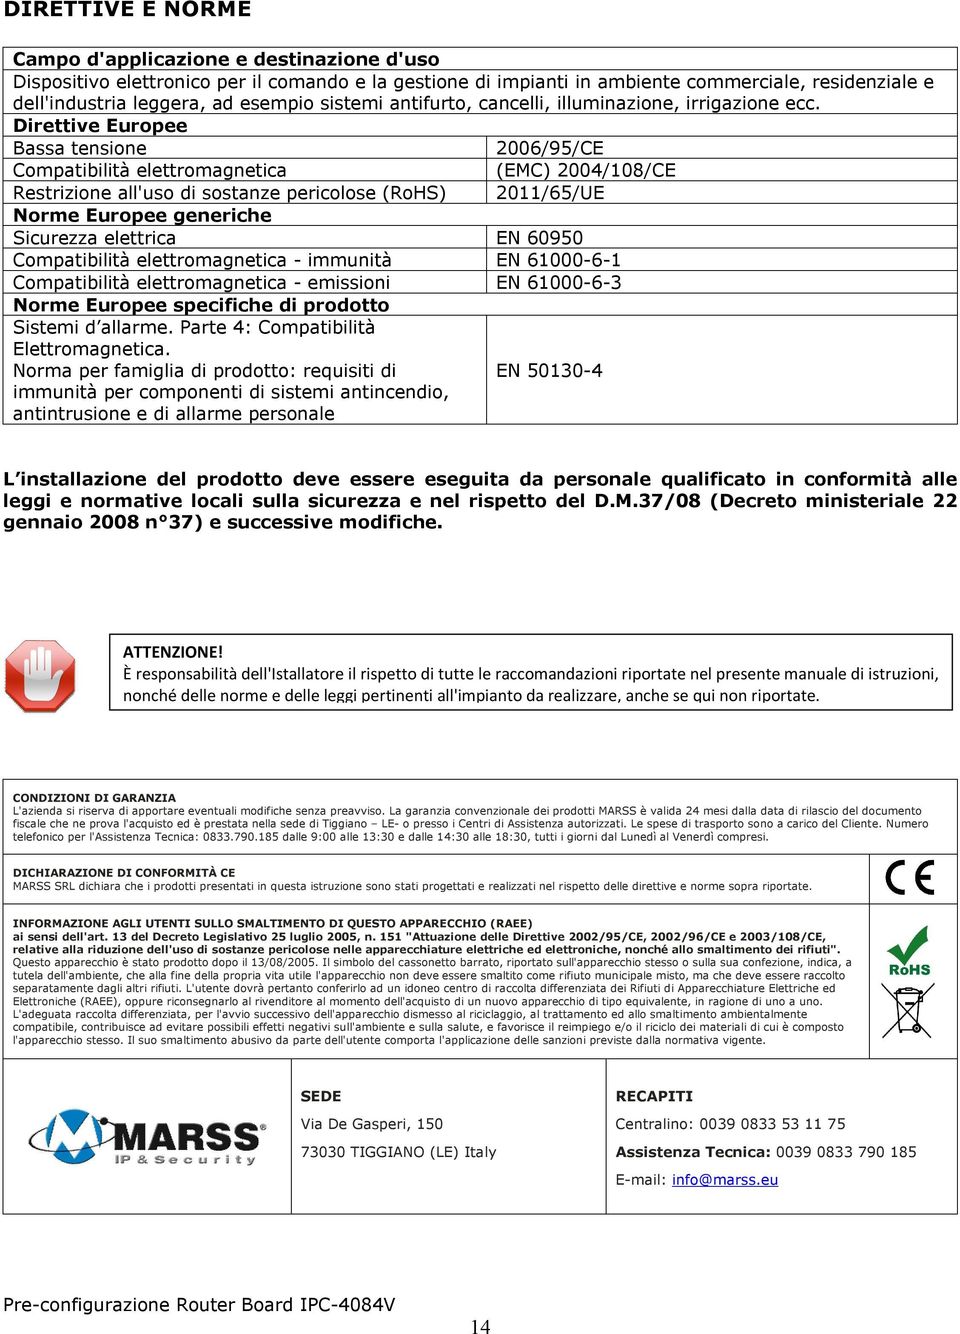 Direttive Europee Bassa tensione 2006/95/CE Compatibilità elettromagnetica (EMC) 2004/108/CE Restrizione all'uso di sostanze pericolose (RoHS) 2011/65/UE Norme Europee generiche Sicurezza elettrica